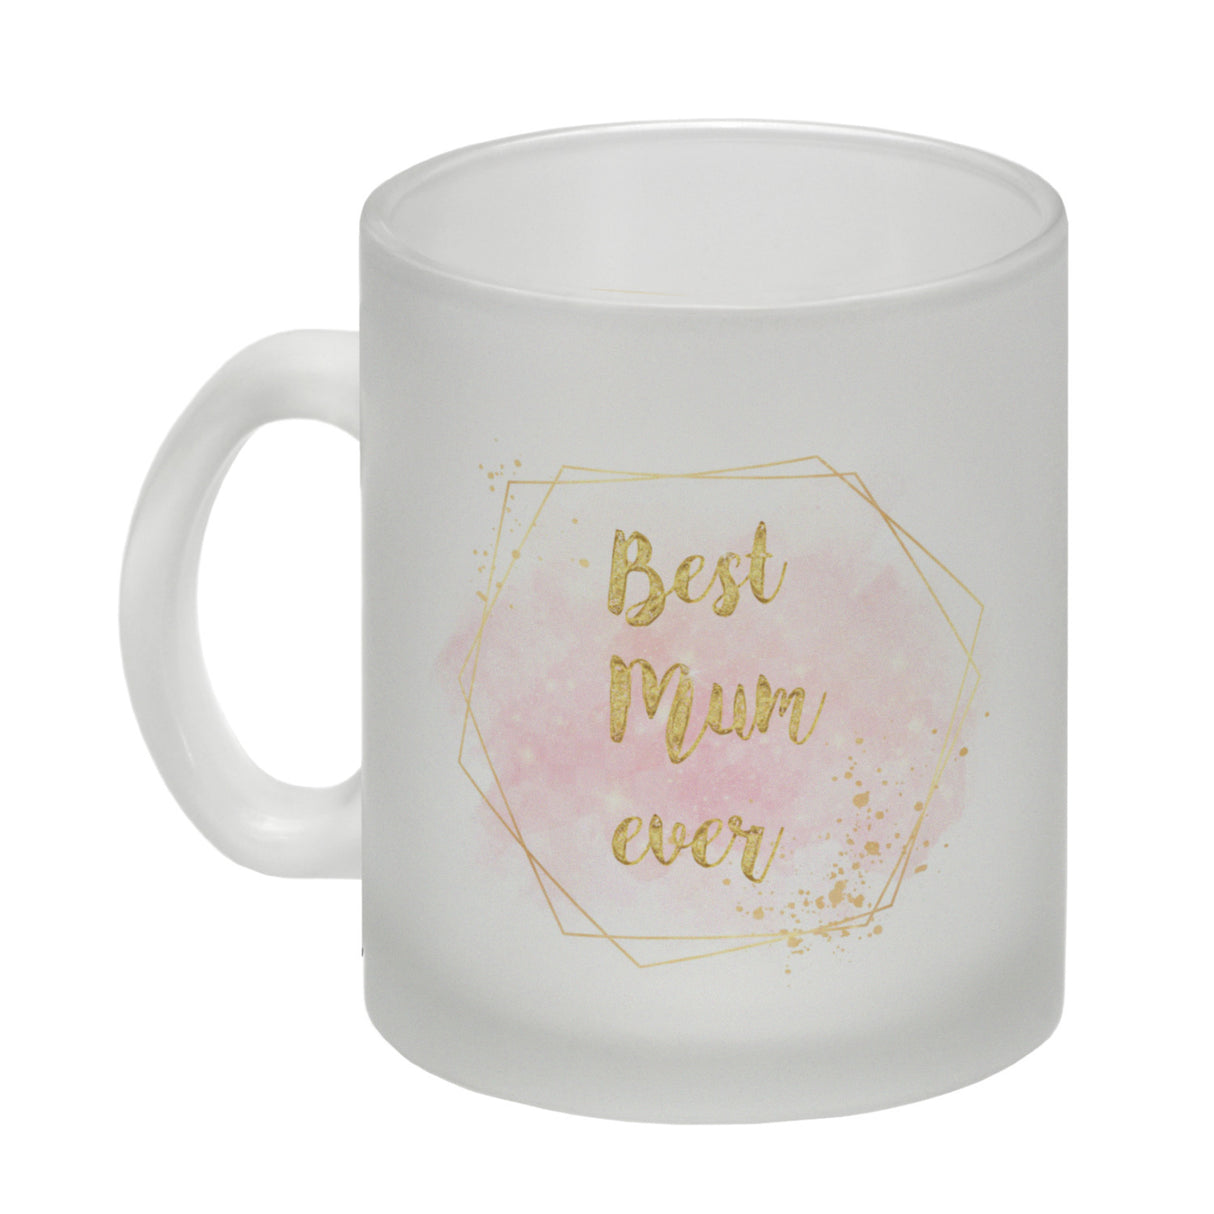 Best Mom ever Kaffeebecher als Geschenk zum Muttertag